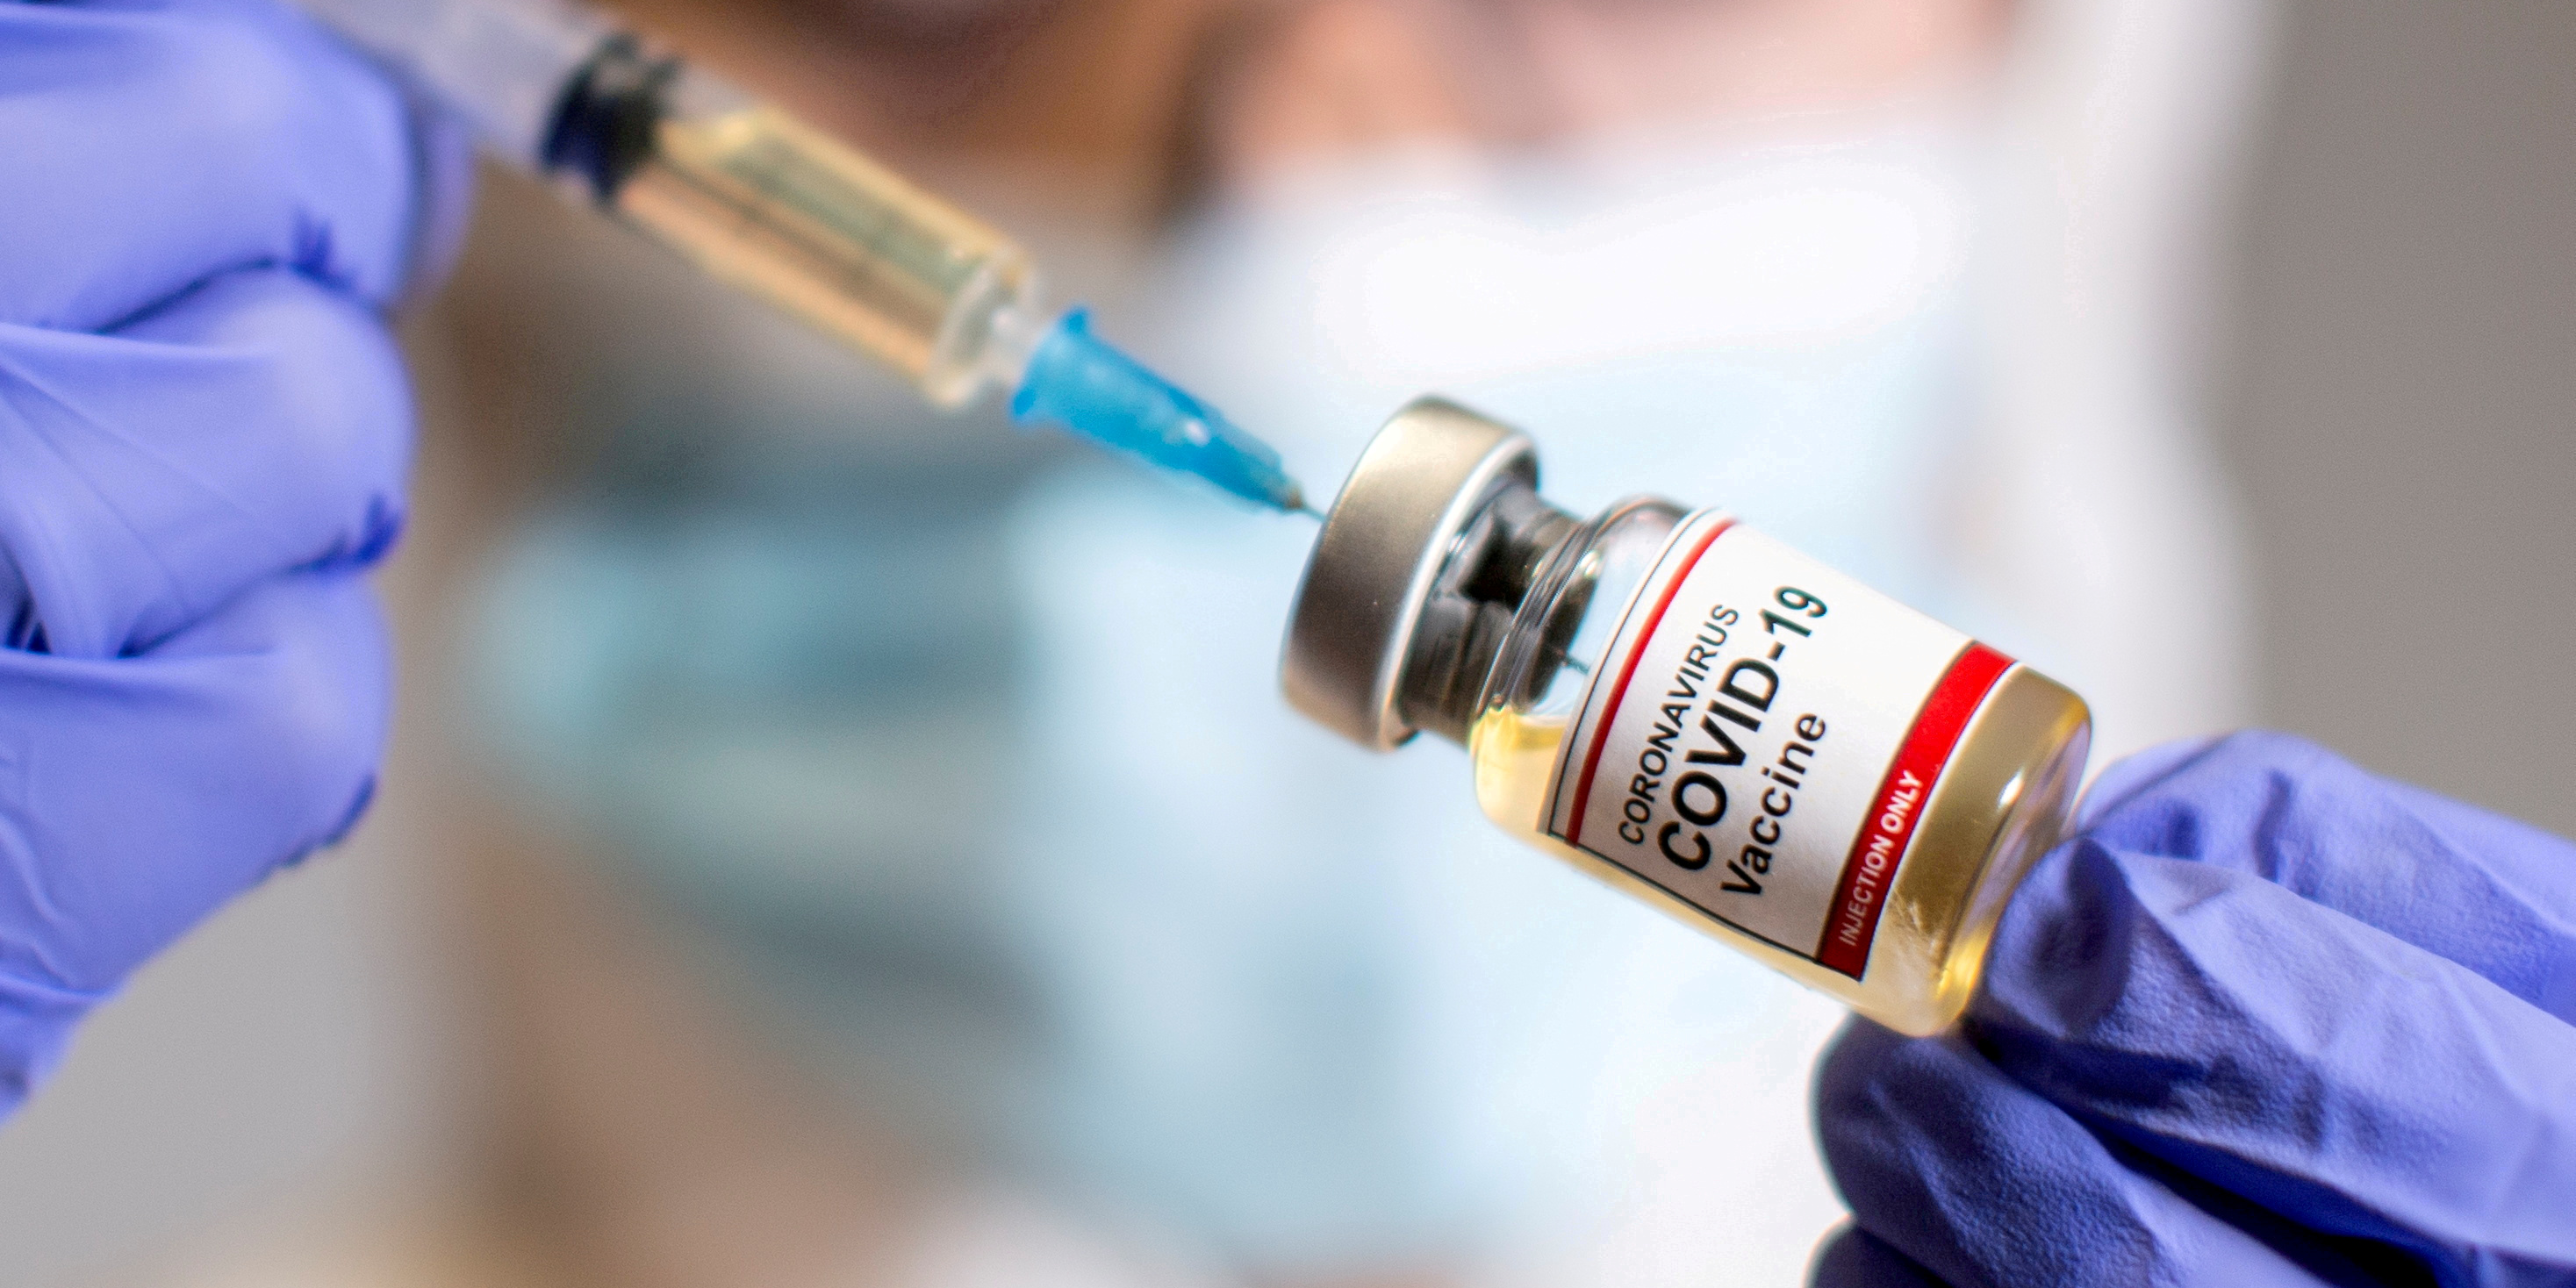 À rebours de certains pays, la Suisse mise sur la prudence face aux vaccins contre le Covid-19